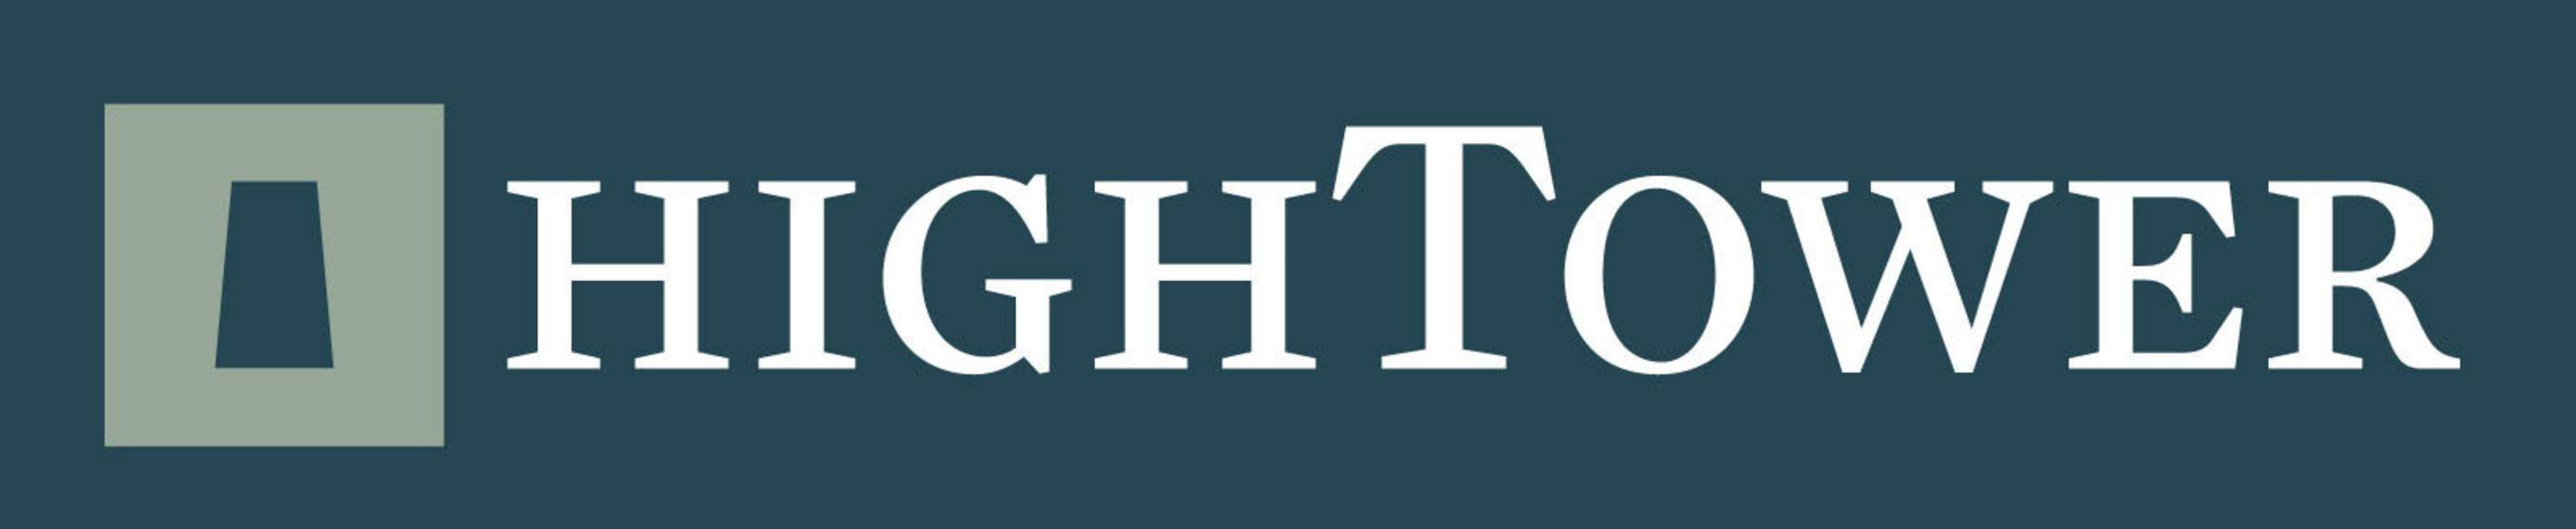 Hightower Logo - HighTower Advisors Secure Spots on Barron's 2016